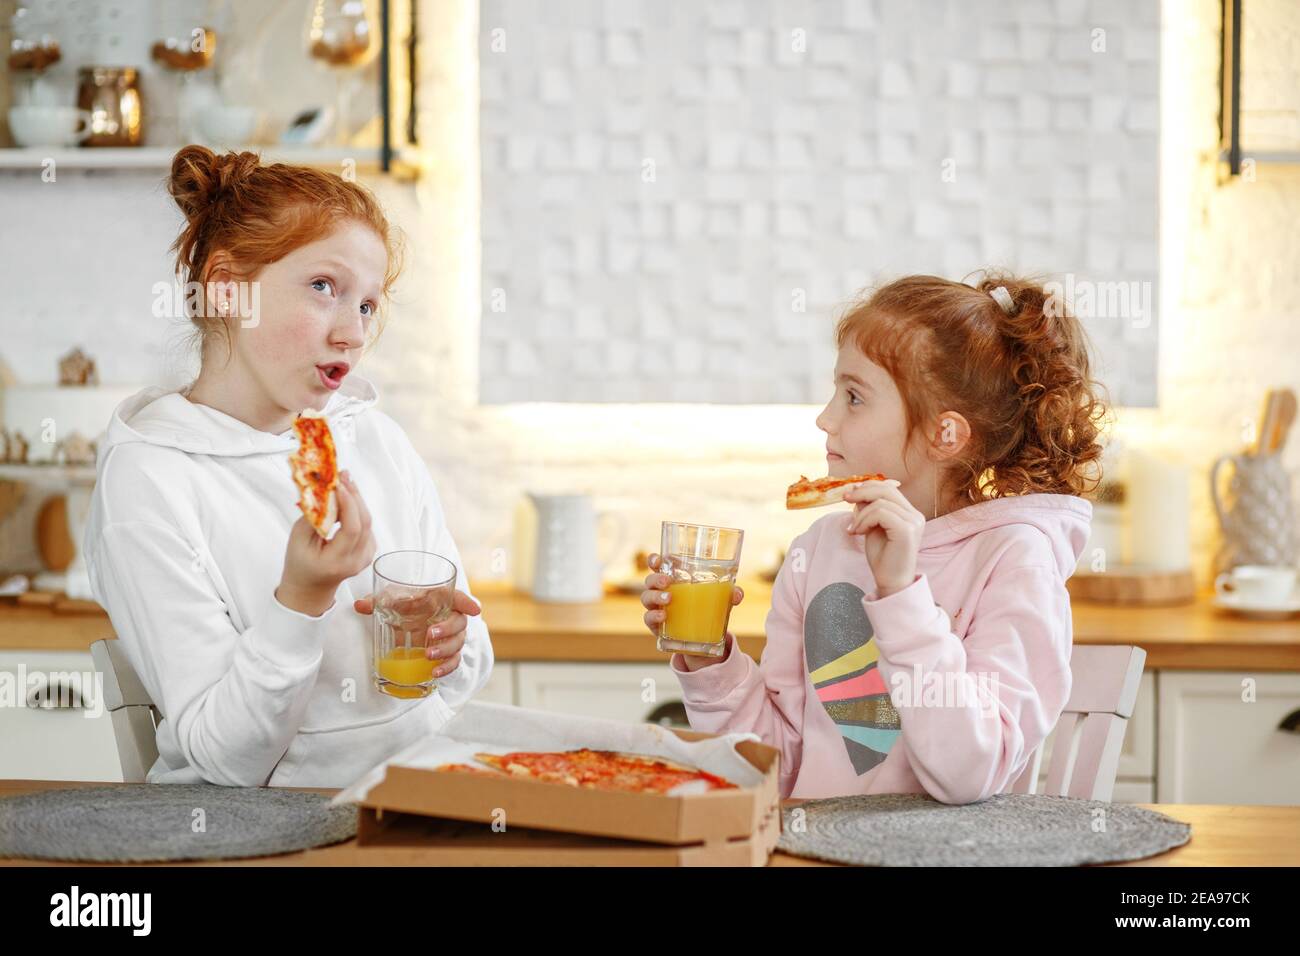 Junge Mädchen mit roten Haaren in der Küche essen Pizza, trinken Saft. Treffen mit Freundinnen, zwei Schwestern. Stockfoto